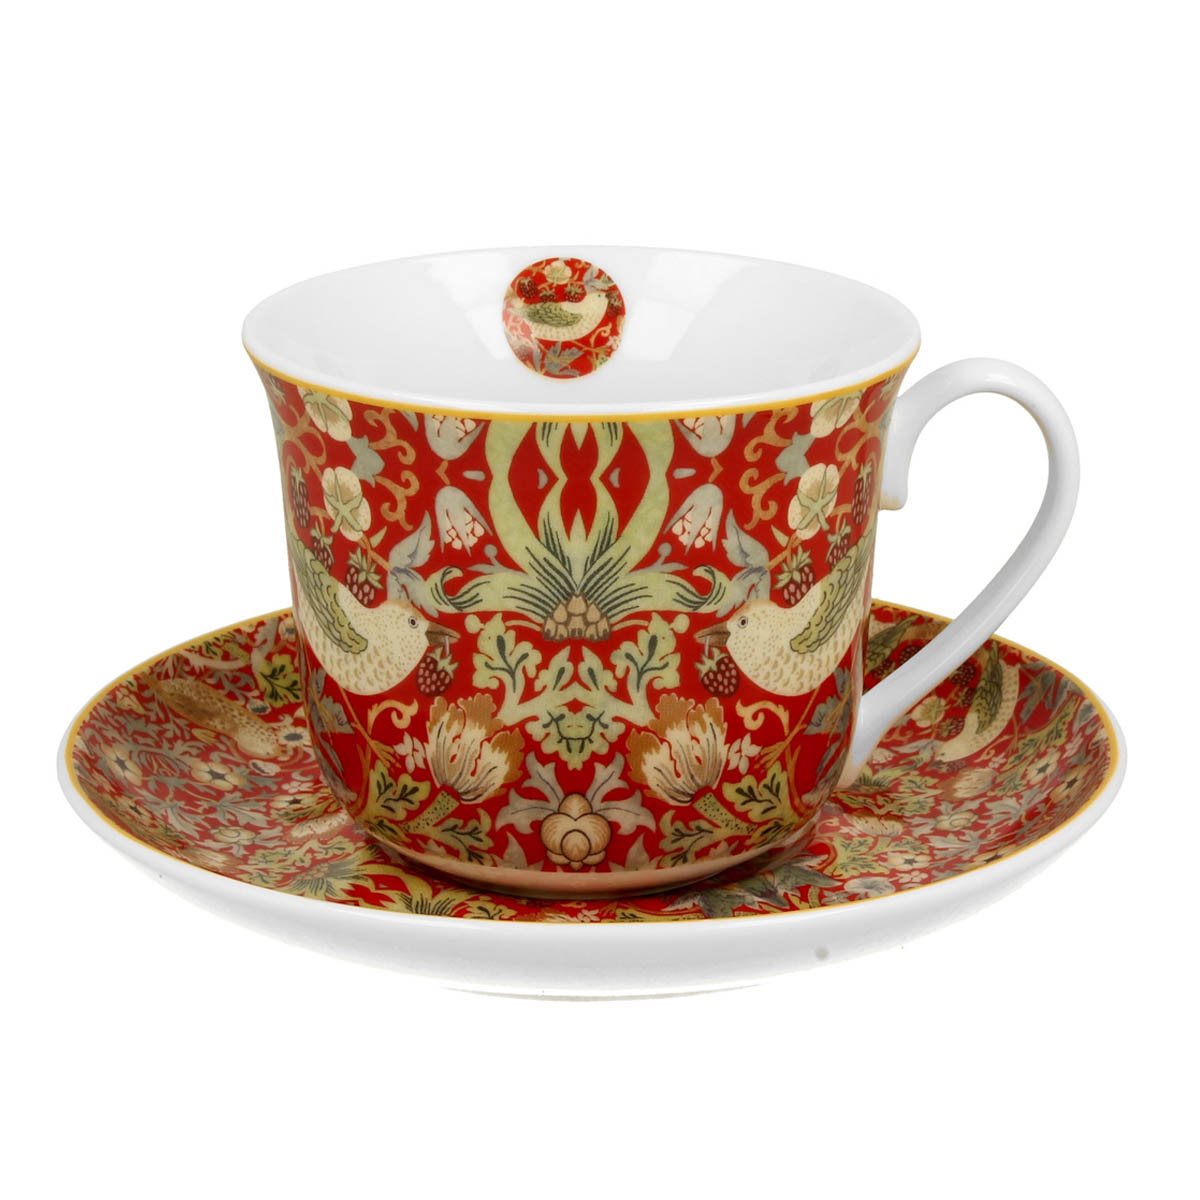 Déjeuner tasse porcelaine \'William Morris Collection\' rouge (Strawberry Thief) - 10x8 cm (470 ml) - [R8691]